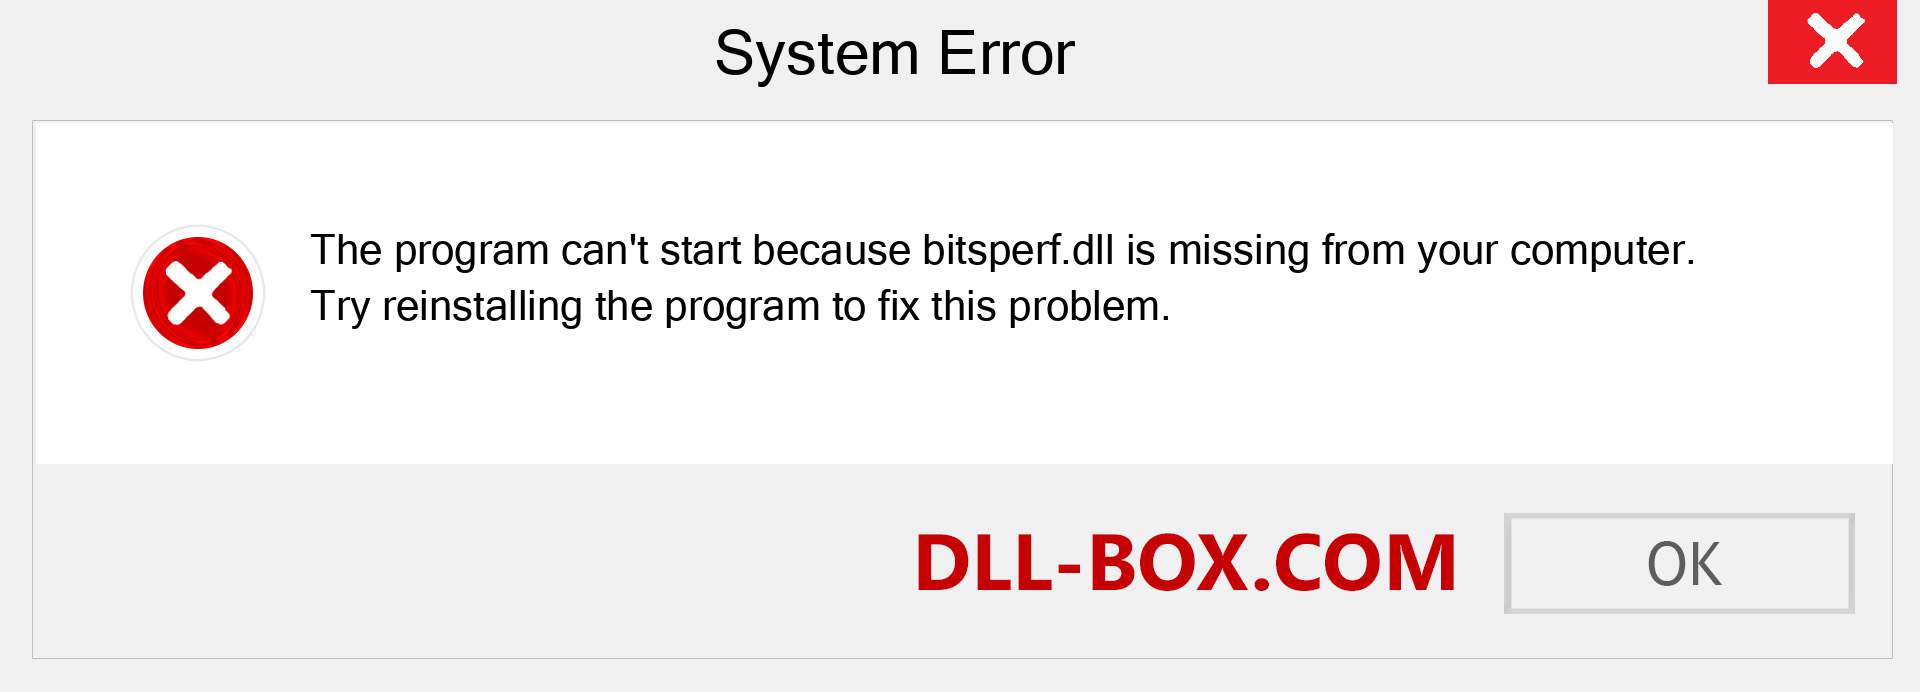  bitsperf.dll file is missing?. Download for Windows 7, 8, 10 - Fix  bitsperf dll Missing Error on Windows, photos, images